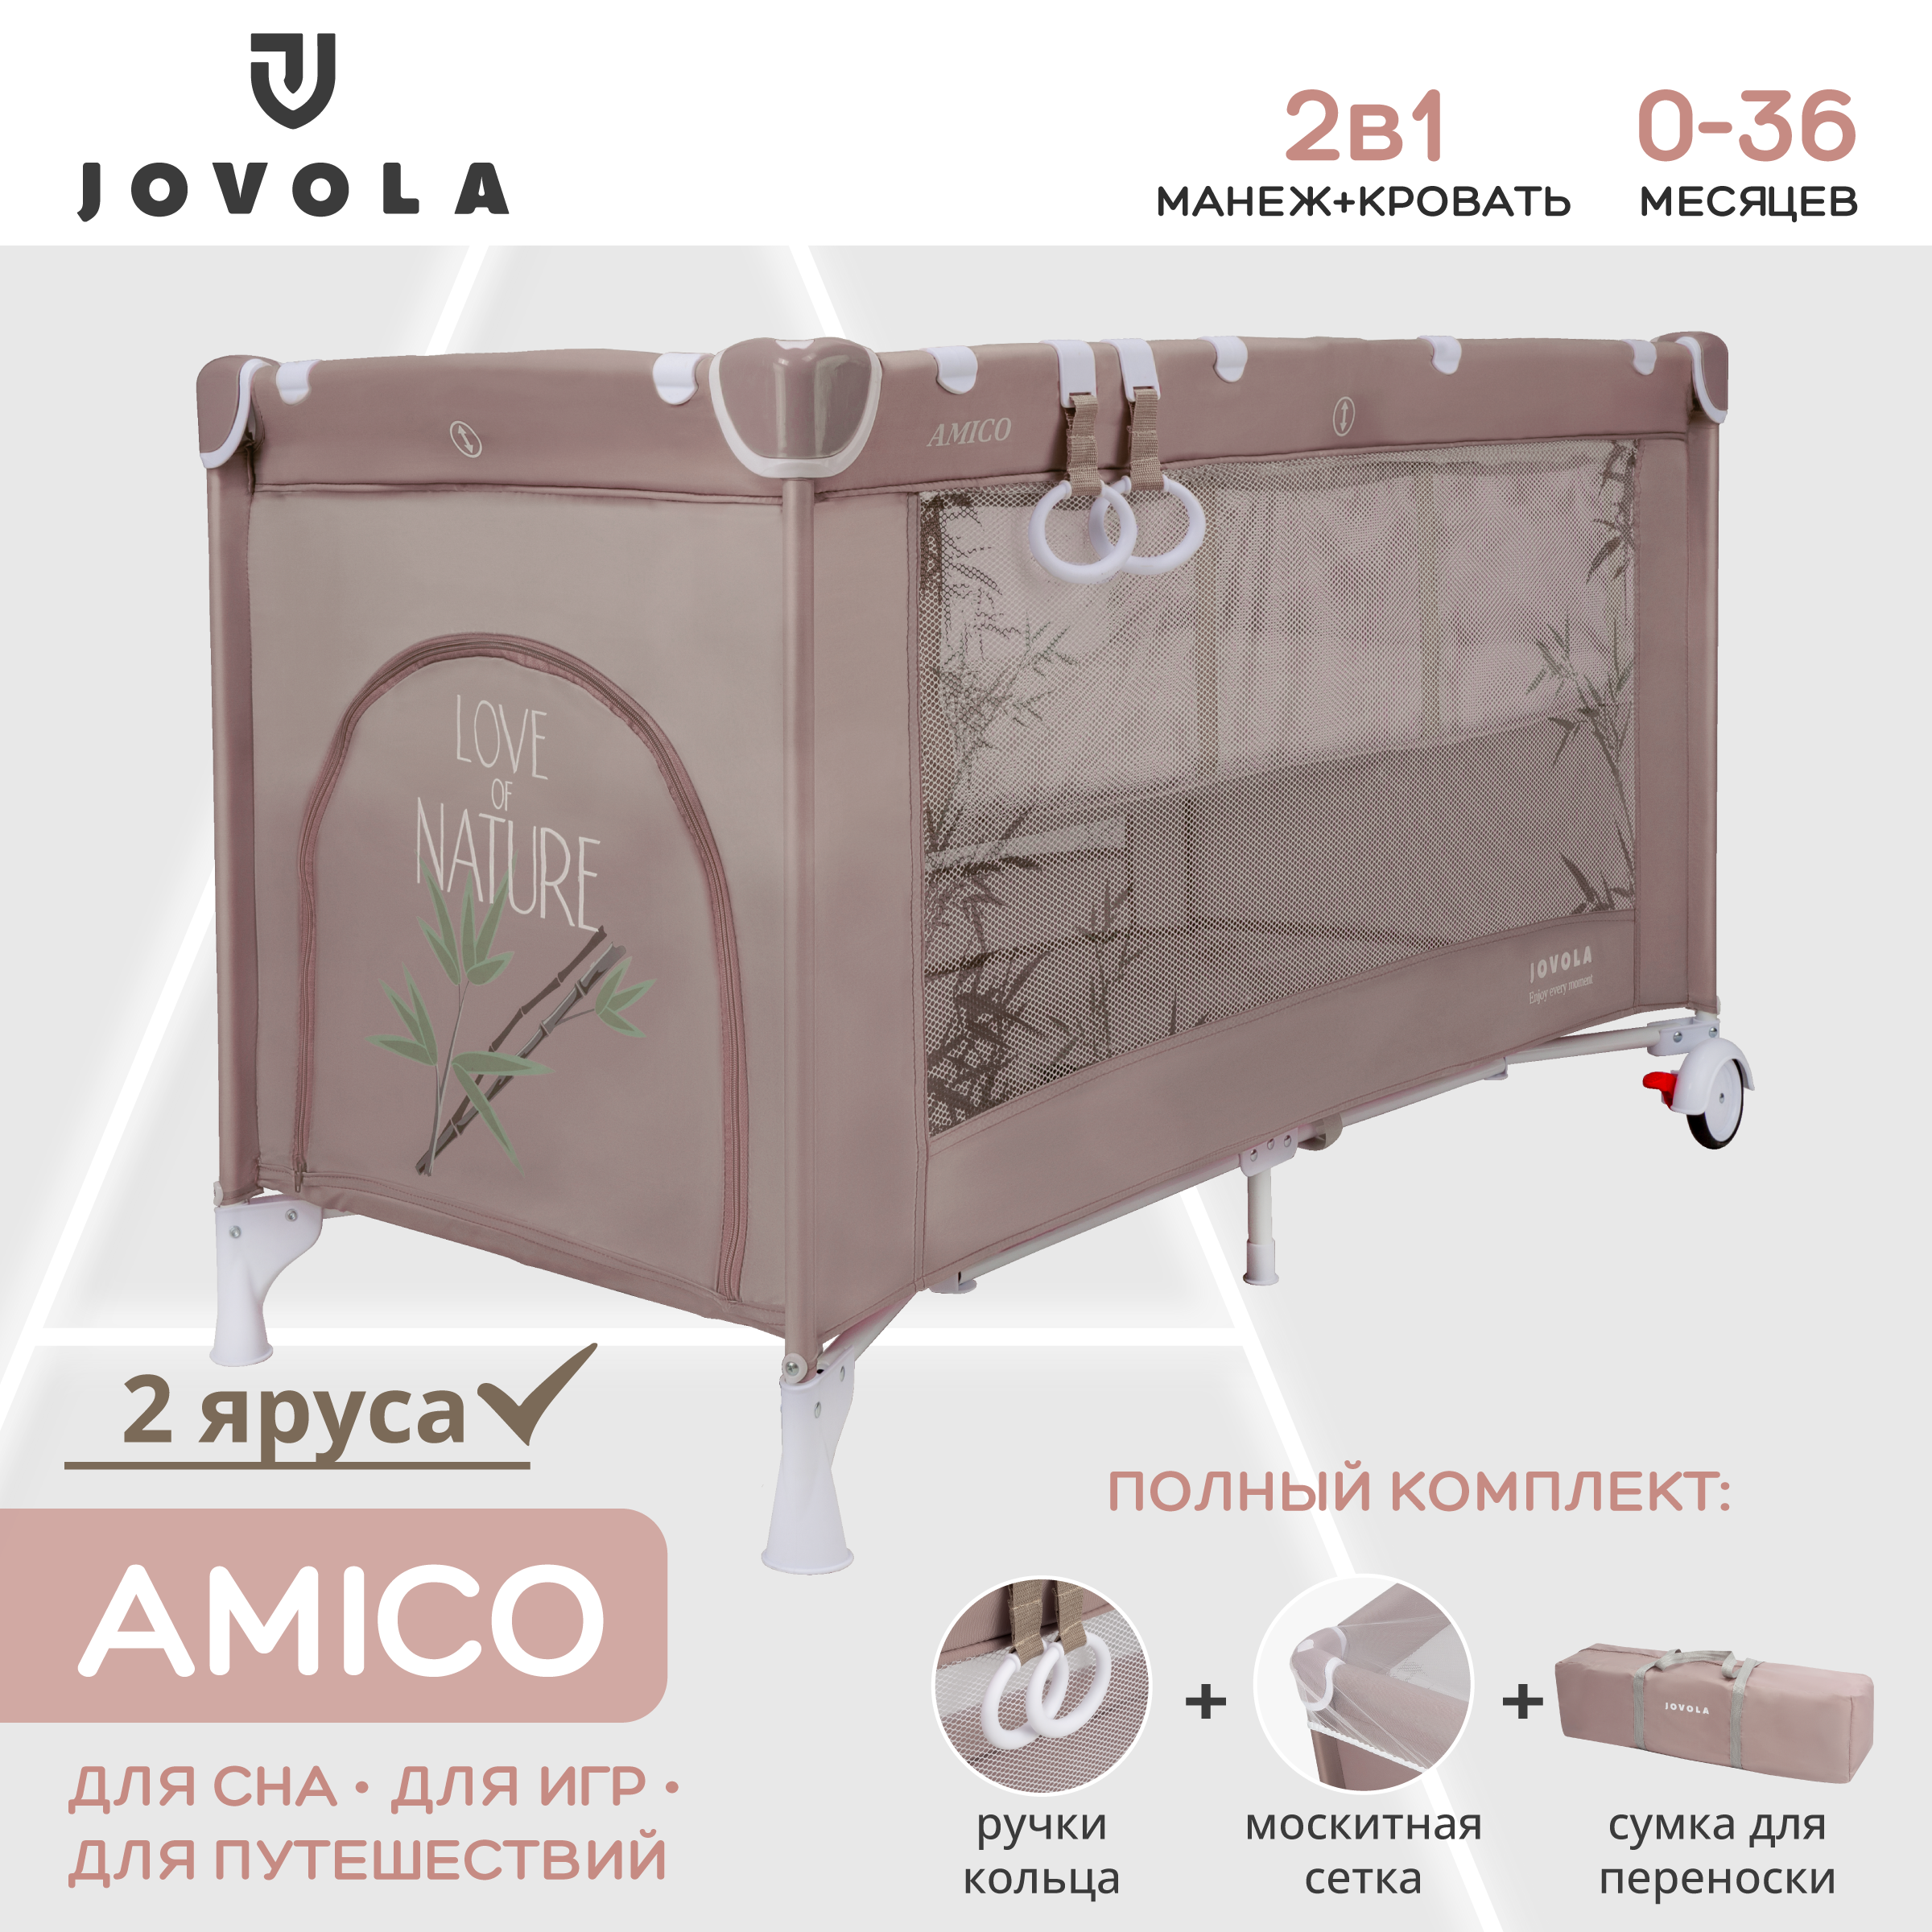 Манеж кровать детский Indigo JOVOLA AMICO складной 2 уровня мокко бамбук комплект прямых фиксированных обрезиненных штанг 5 шт от 10 до 20кг hasttings digger hd51g2a 10 20